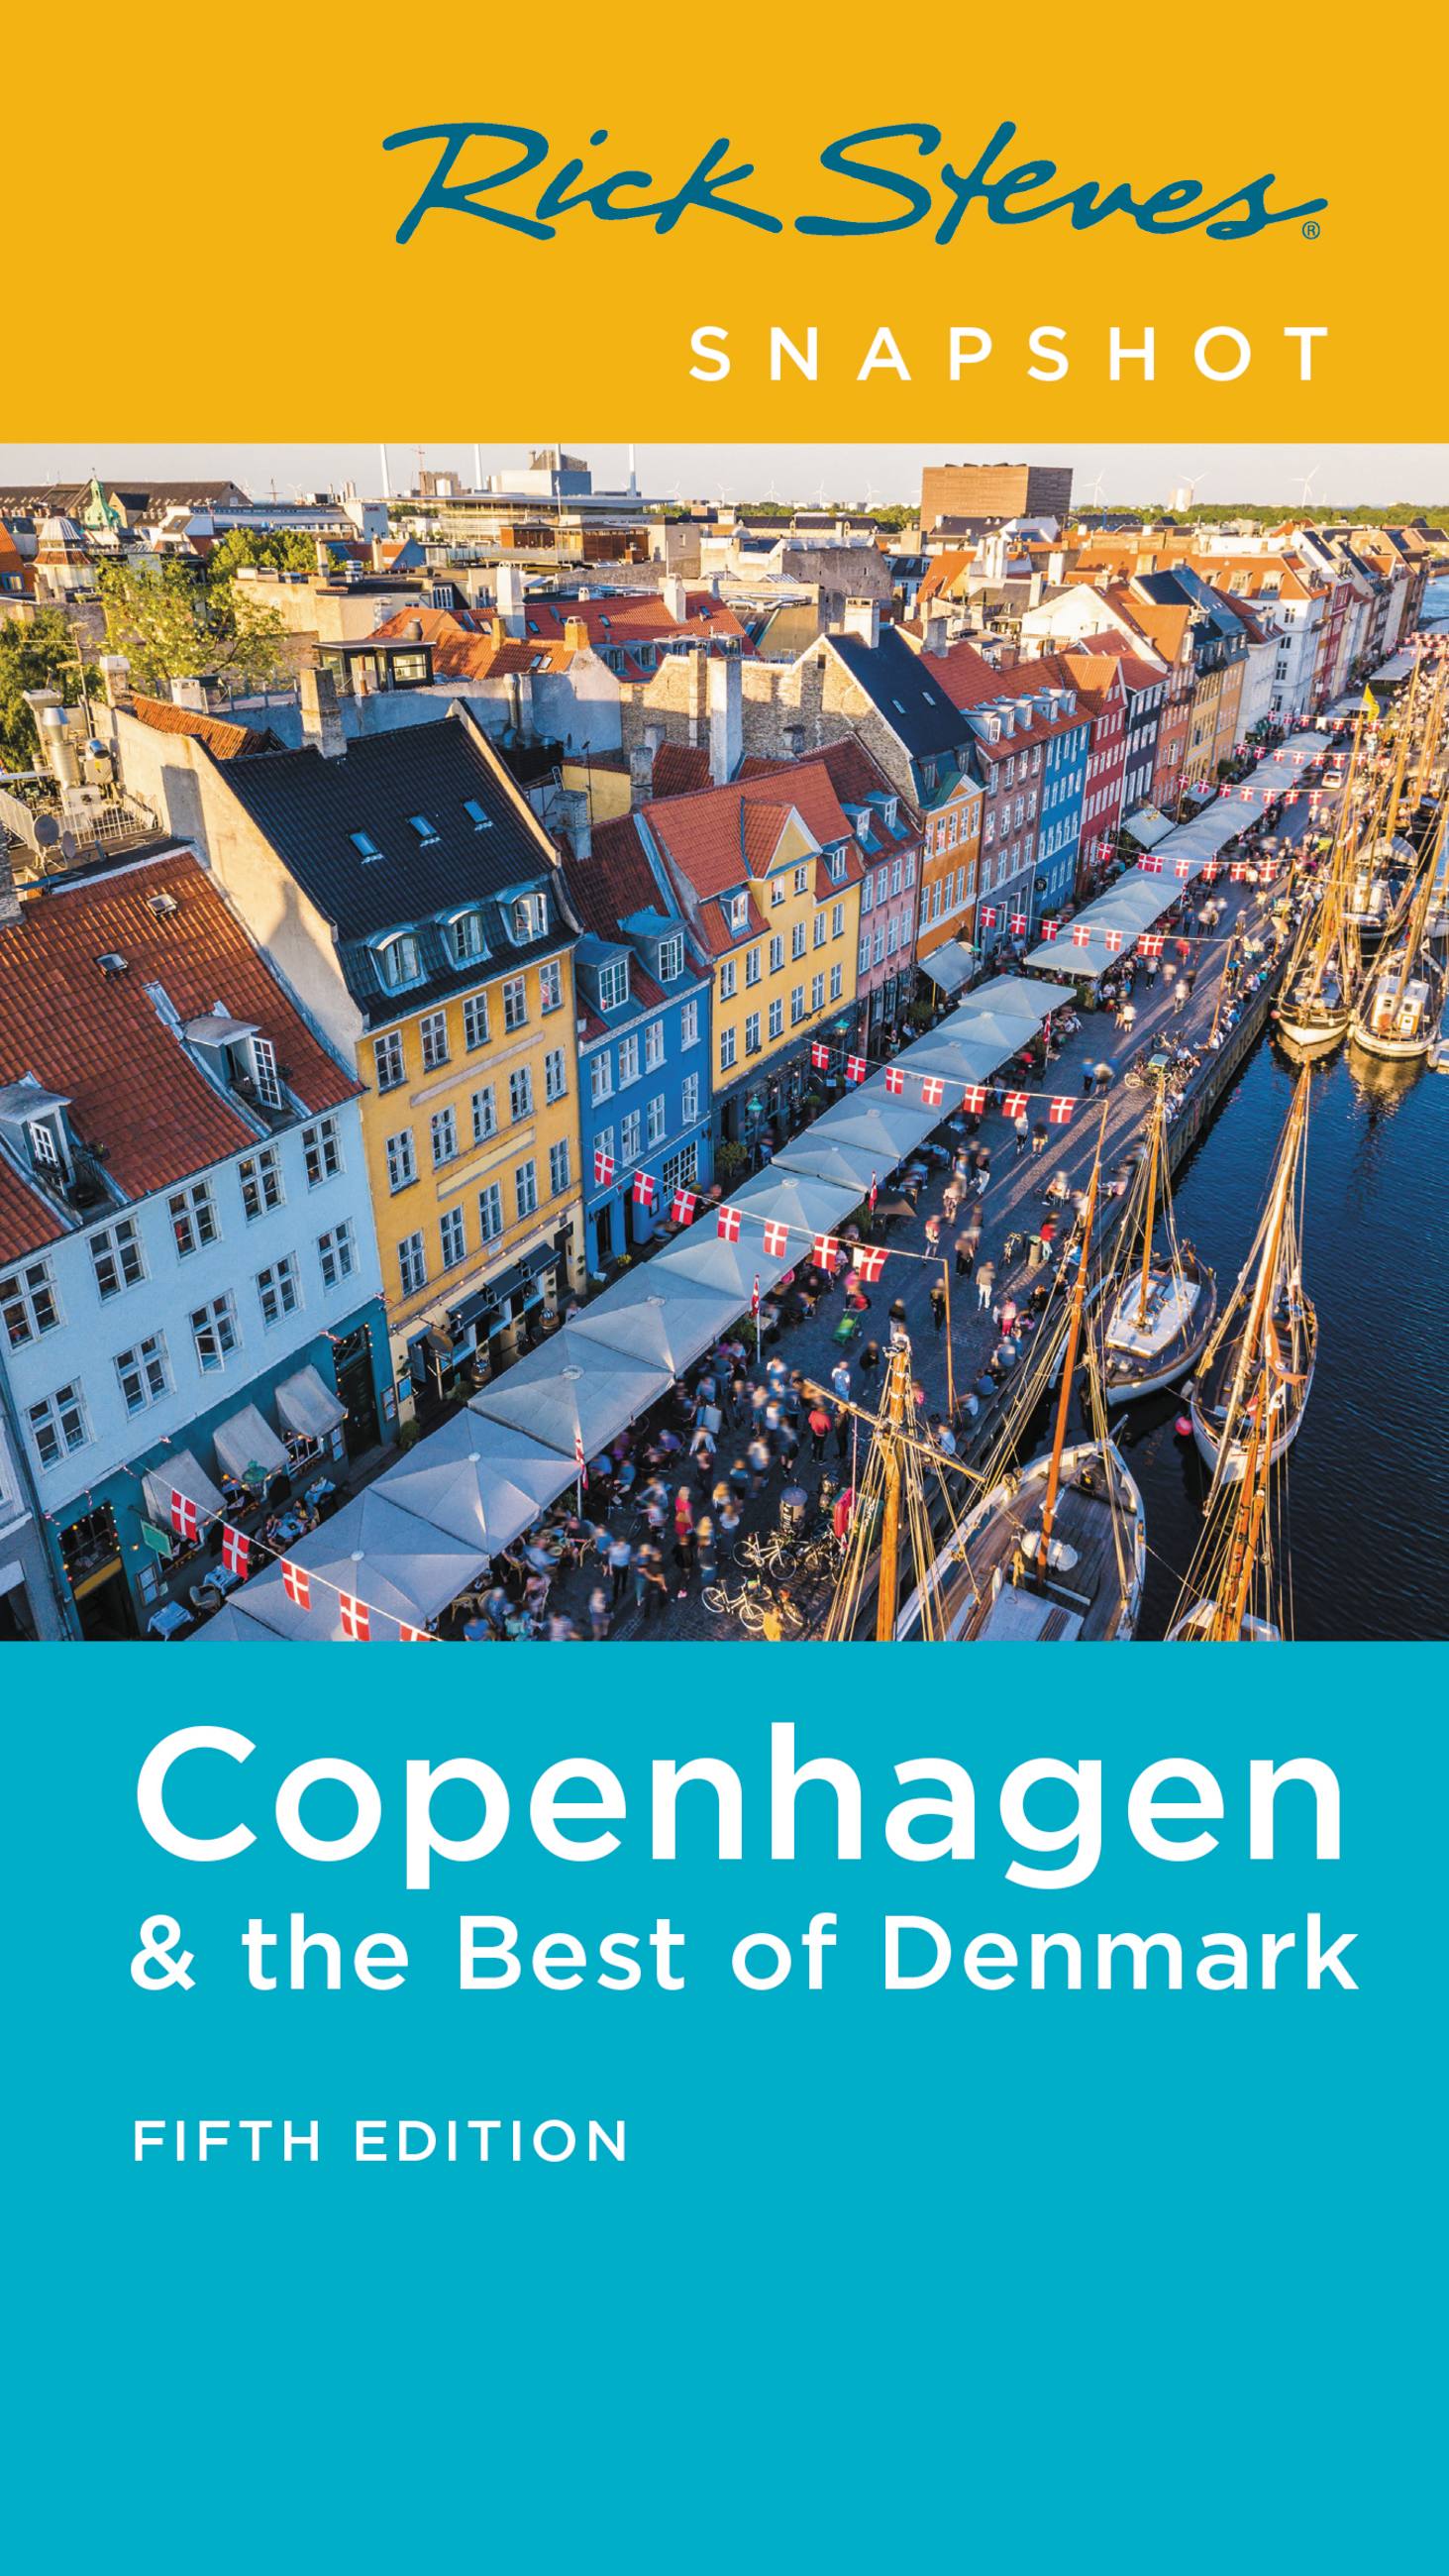 Rick Steves Snapshot Copenhagen & Best of Denmark by Rick Steves | Hachette Book Group